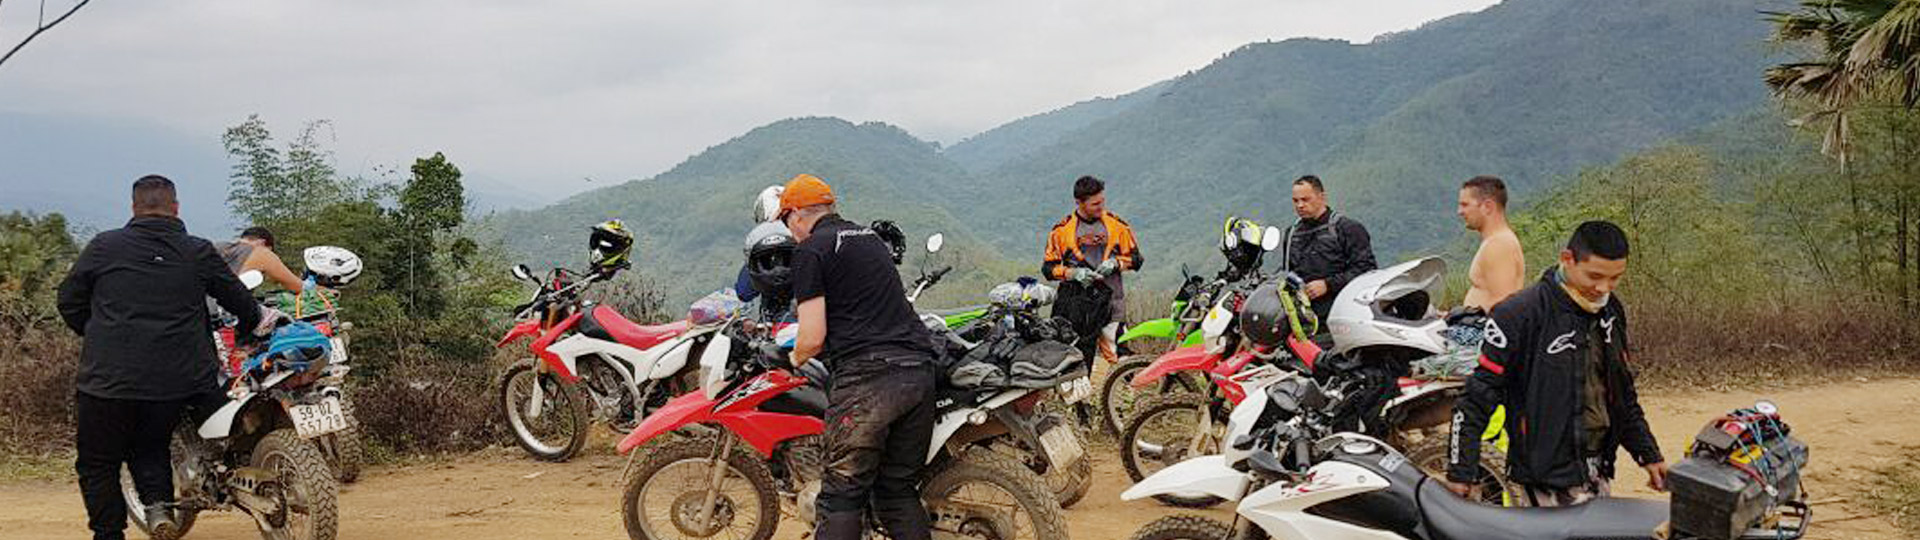 7 Days Vientiane Motorbike Tour To Luang Prabang